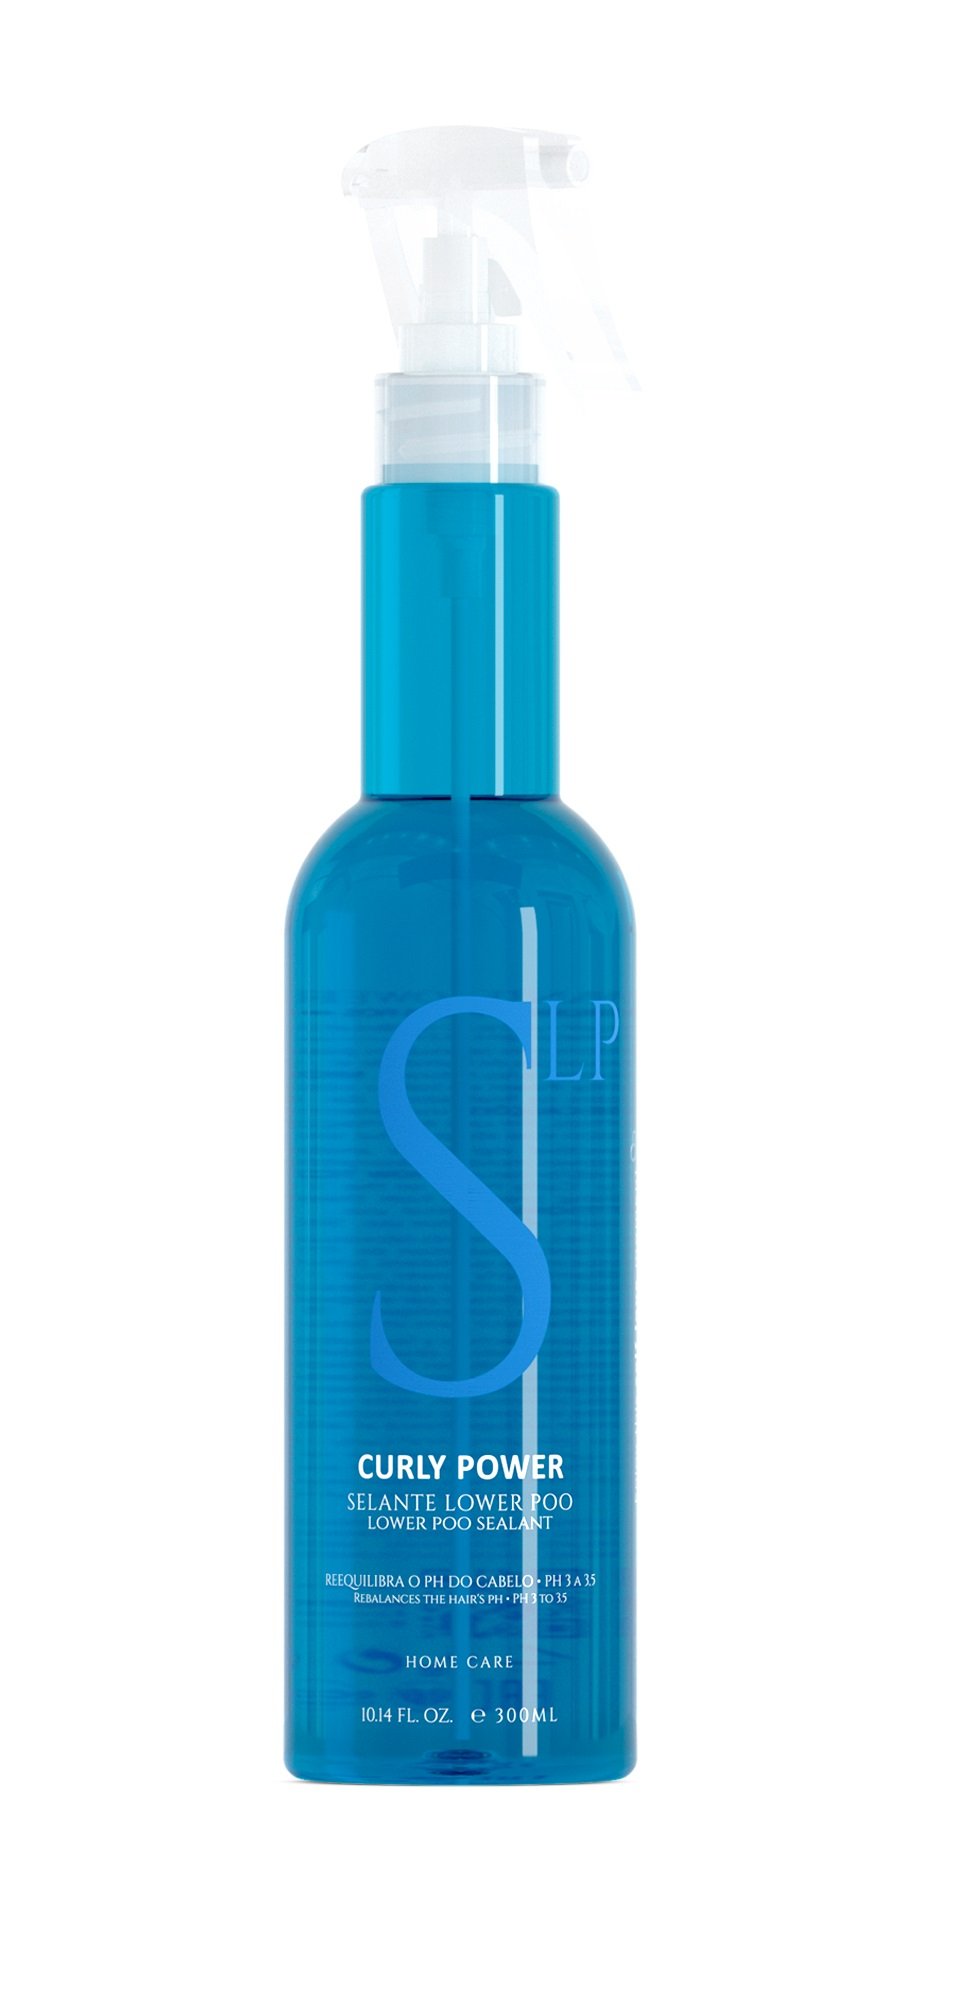 EVAN - Curly Power Sealant Lower Poo Spray 300 ml - Skjønnhet